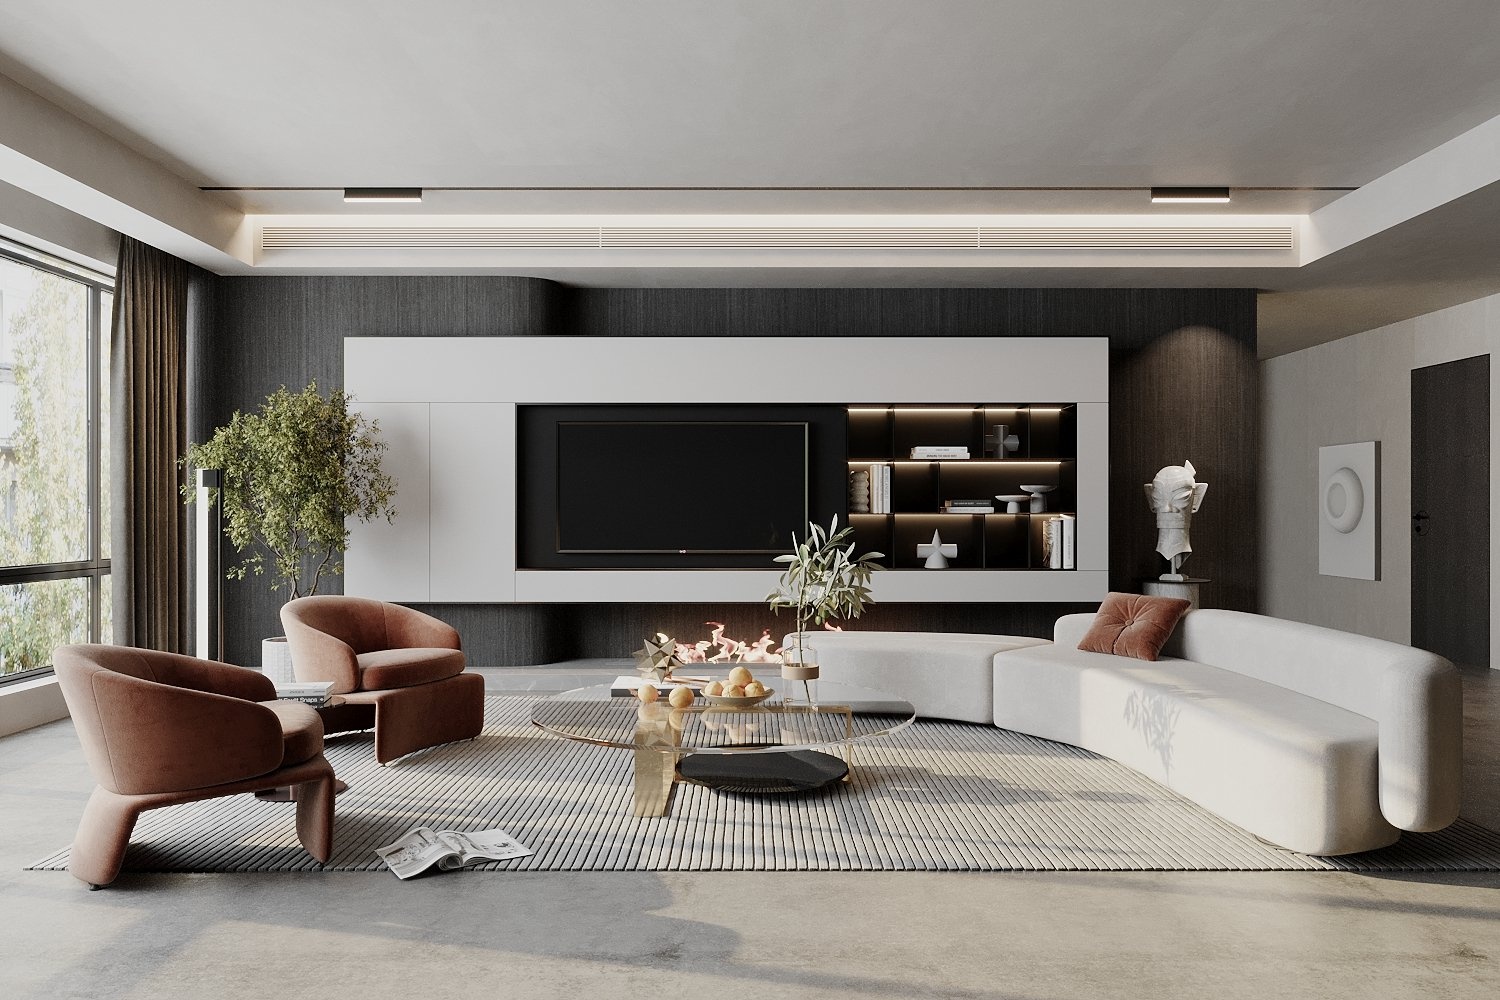 Gợi ý phong cách nội thất phù hợp cho không gian phòng khách 20 - 30m2